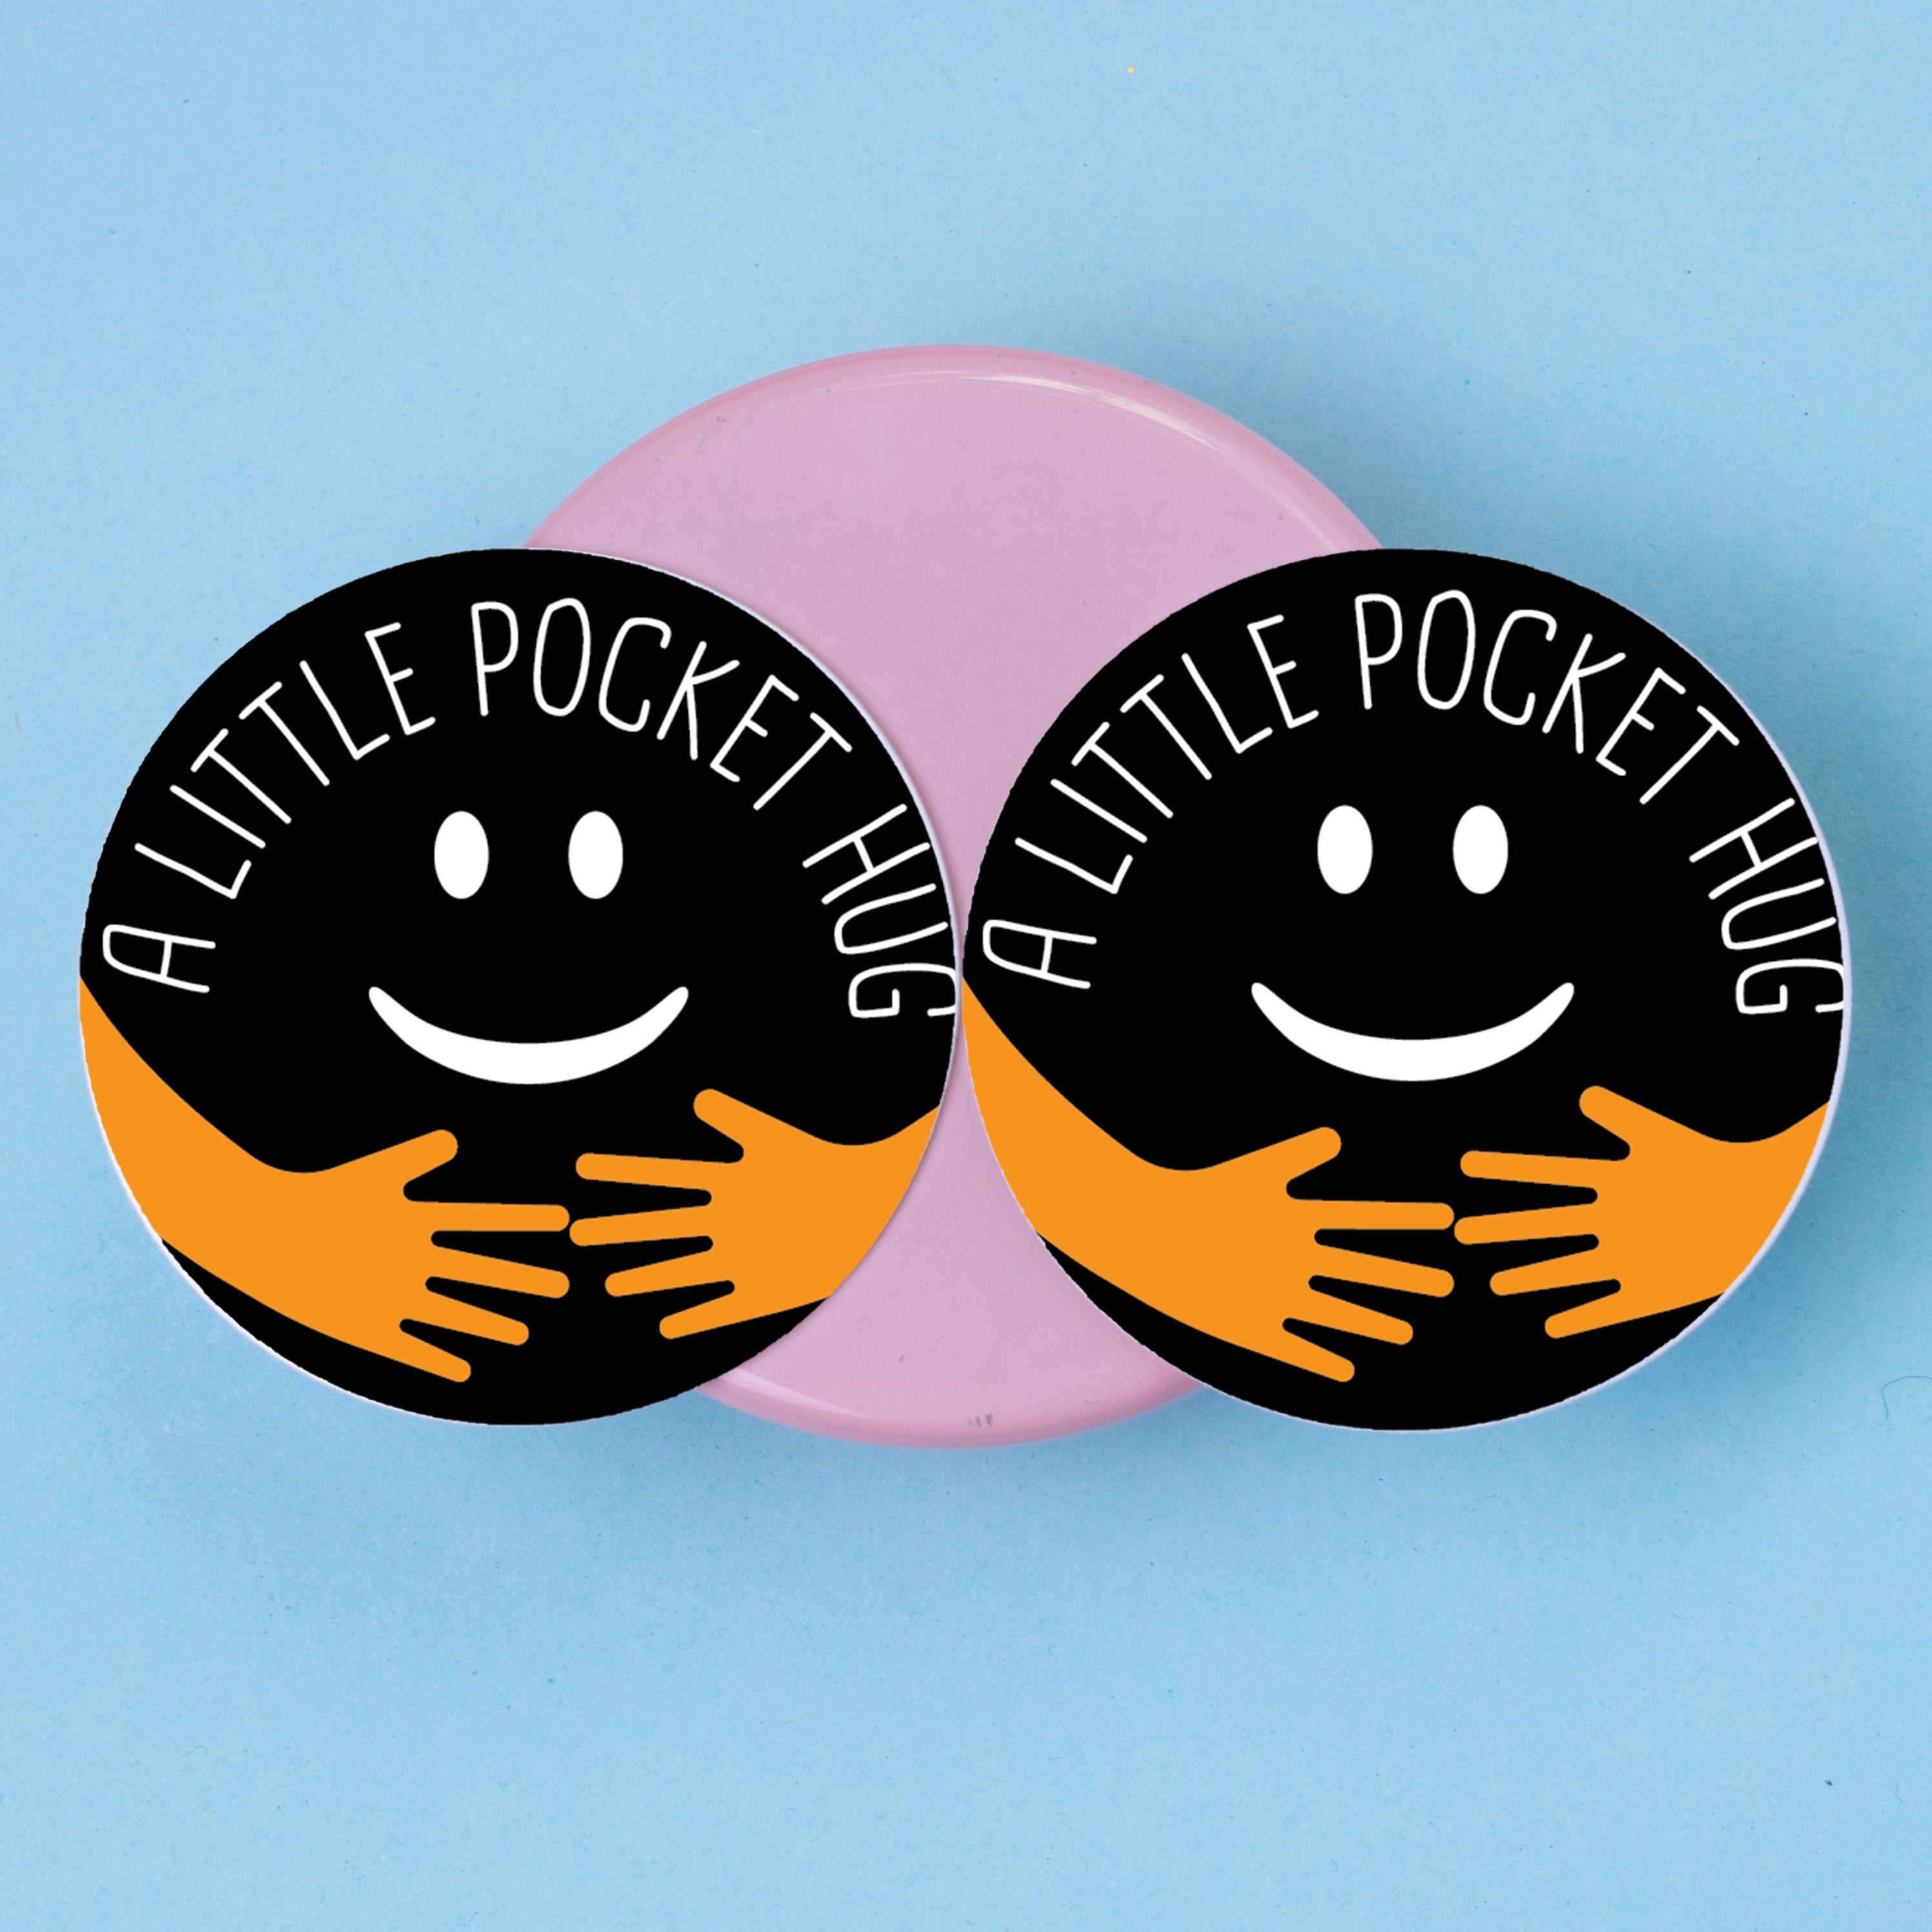 Metal Pocket Hug Tokens - Gift for Her for Him Friends Mum Dad - Black + Orange